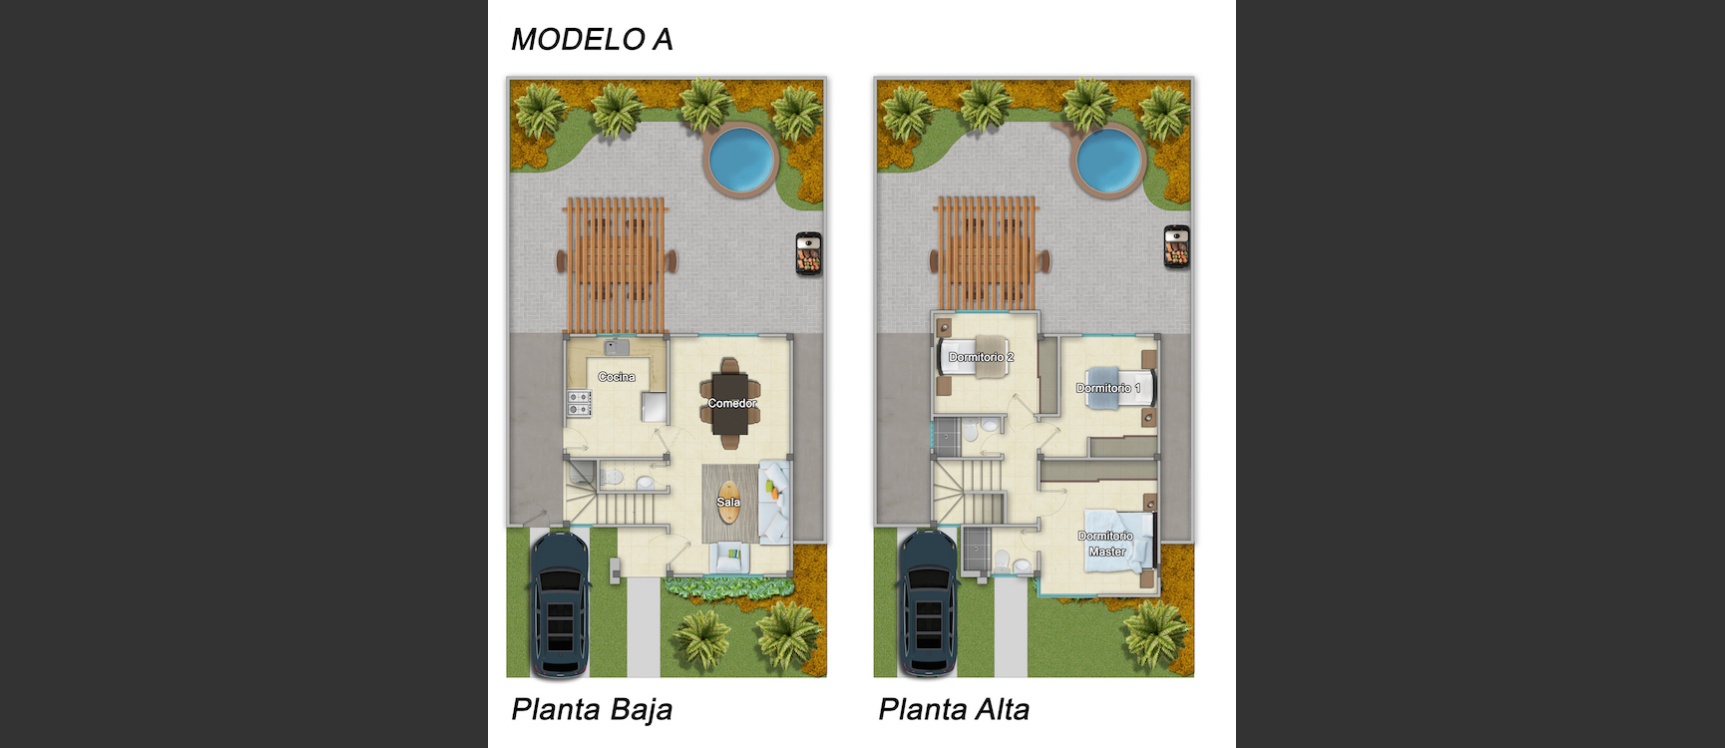 GeoBienes - Casa en venta en Costa Real Guayaquil Modelo A con 3 dormitorios - Plusvalia Guayaquil Casas de venta y alquiler Inmobiliaria Ecuador